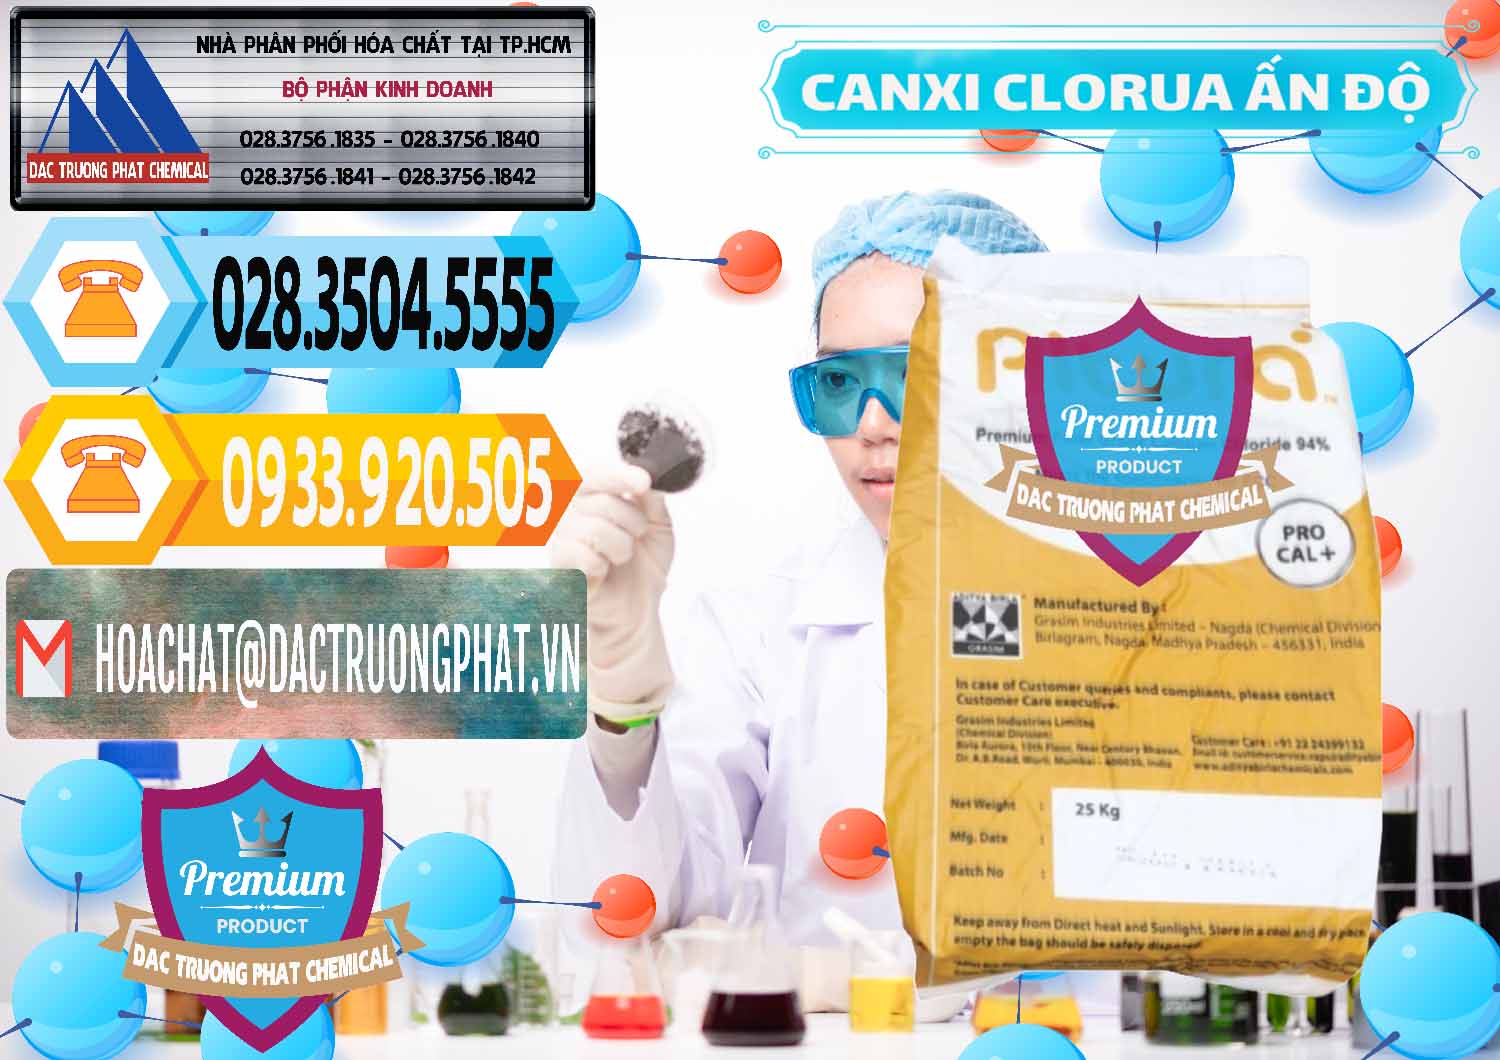 Cty chuyên kinh doanh _ bán CaCl2 – Canxi Clorua Food Grade Altura Aditya Birla Grasim Ấn Độ India - 0436 - Chuyên kinh doanh và phân phối hóa chất tại TP.HCM - hoachattayrua.net